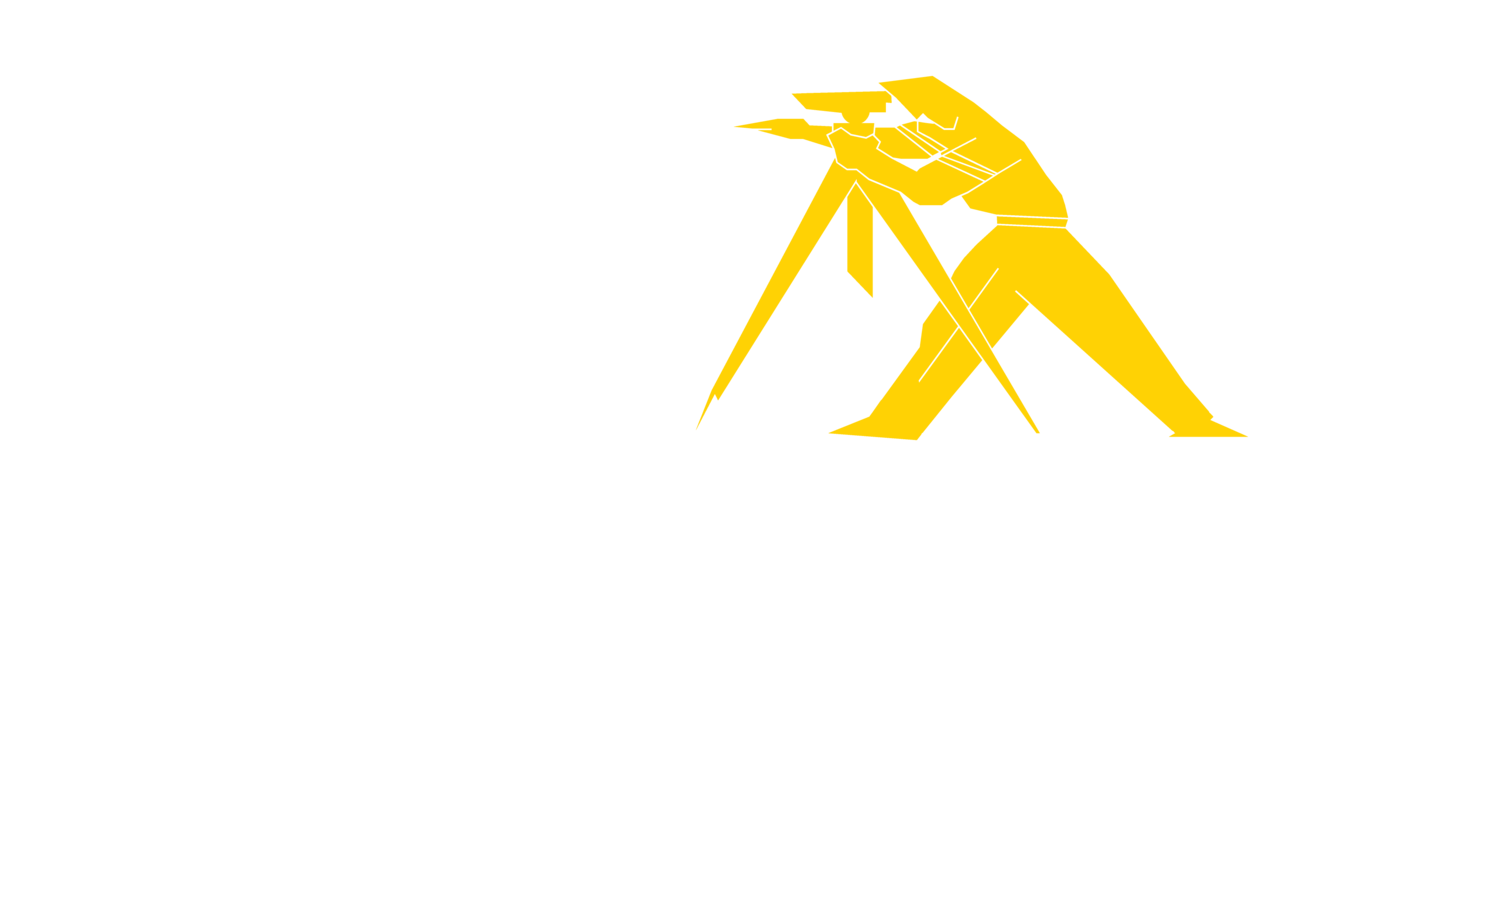 Lewandowski Engineers